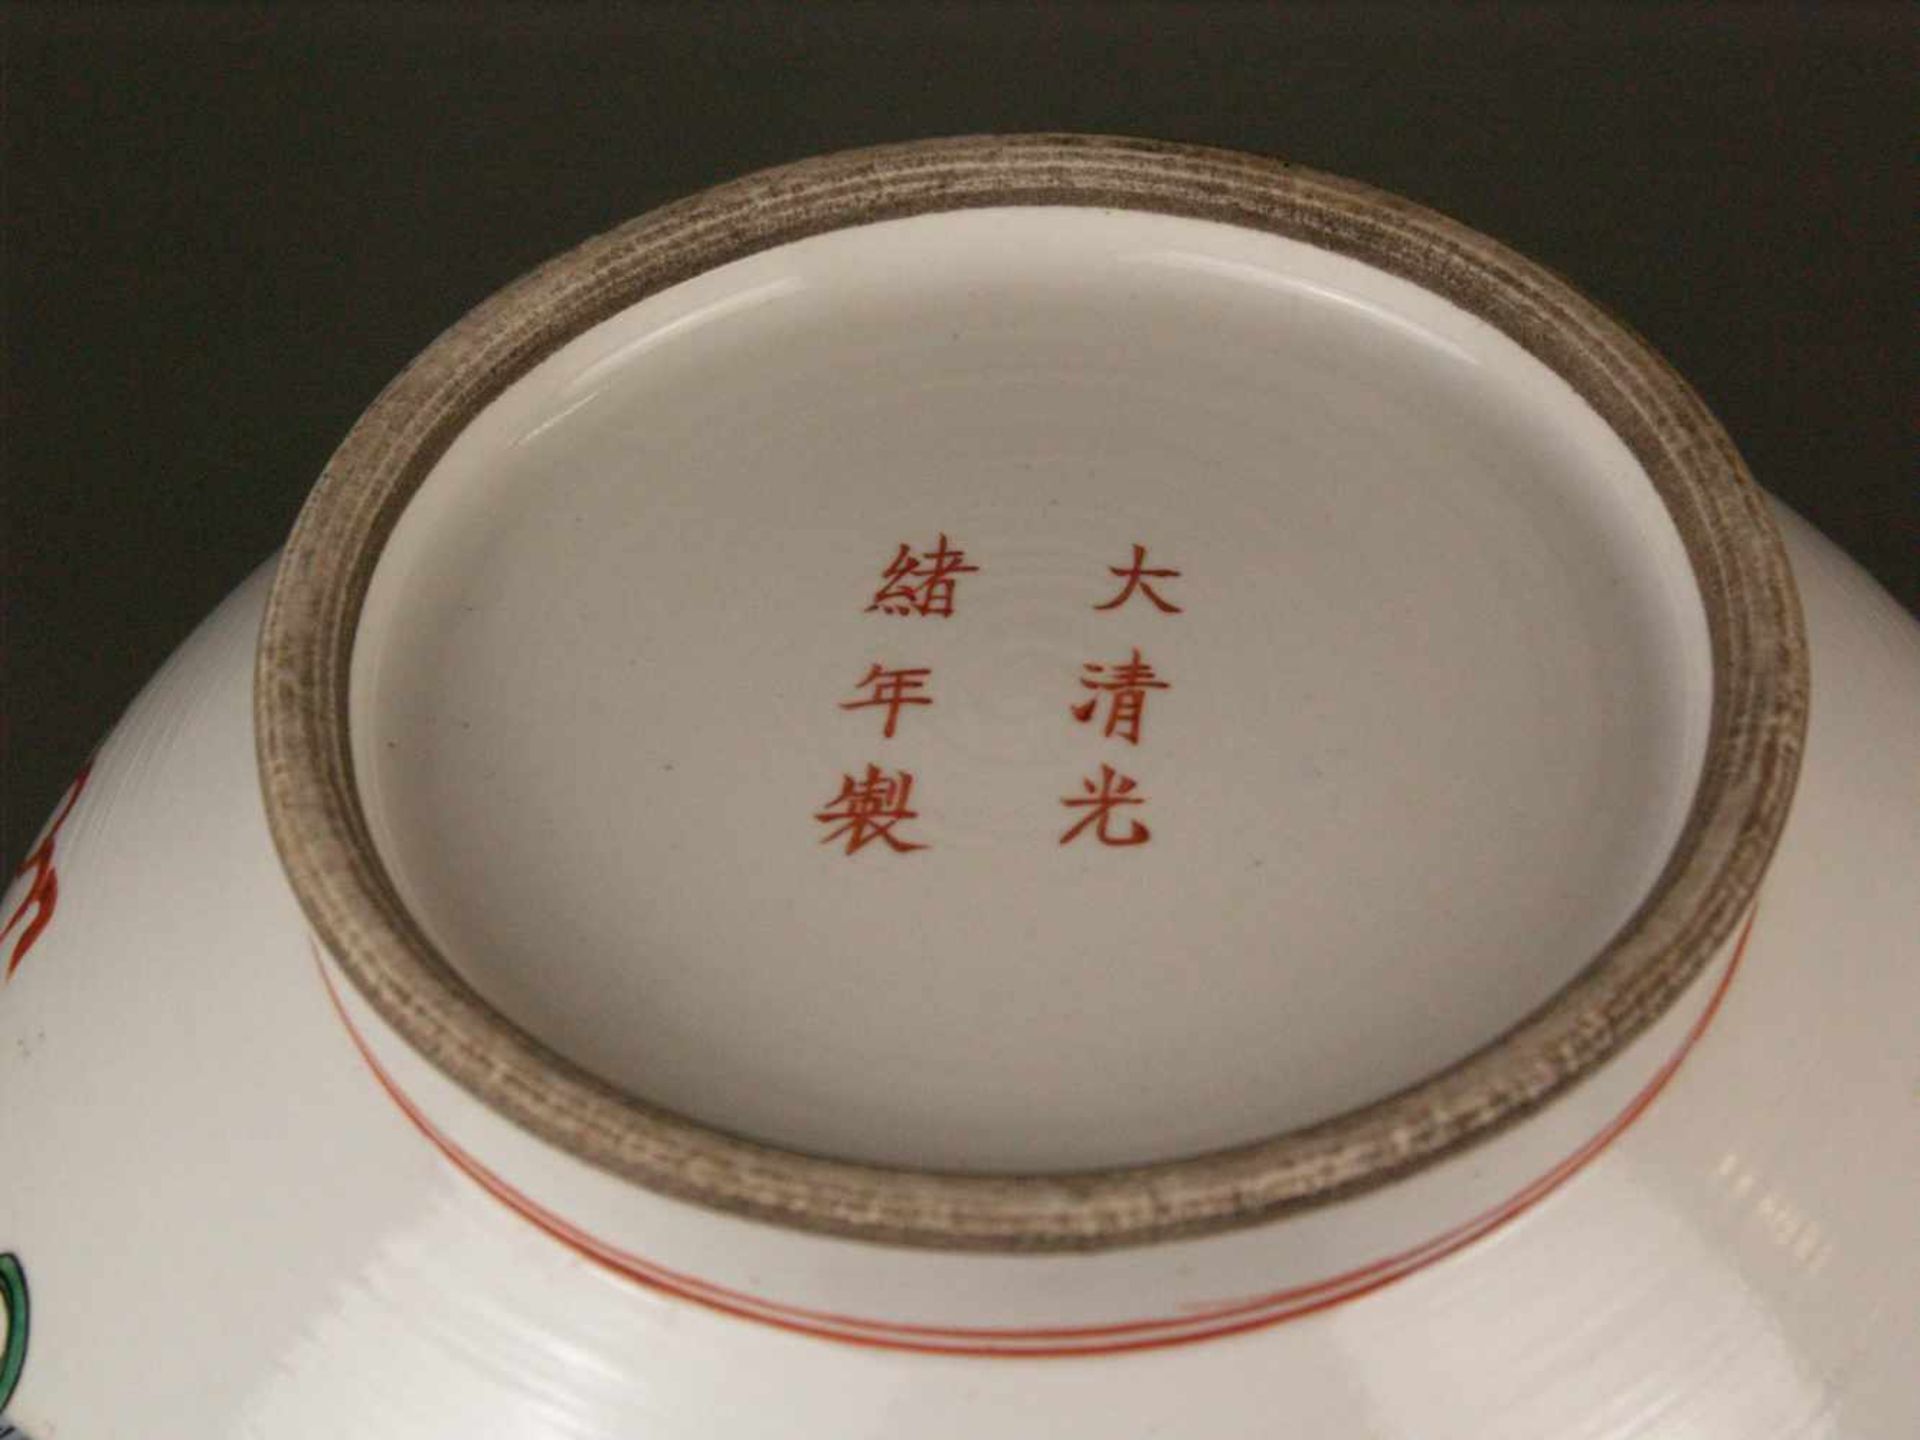 Paar Vasen - China, 20. Jh., Porzellan, Typus "Tian Qiu Ping", bauchiger Korpus mit Rundfuß und - Bild 7 aus 7